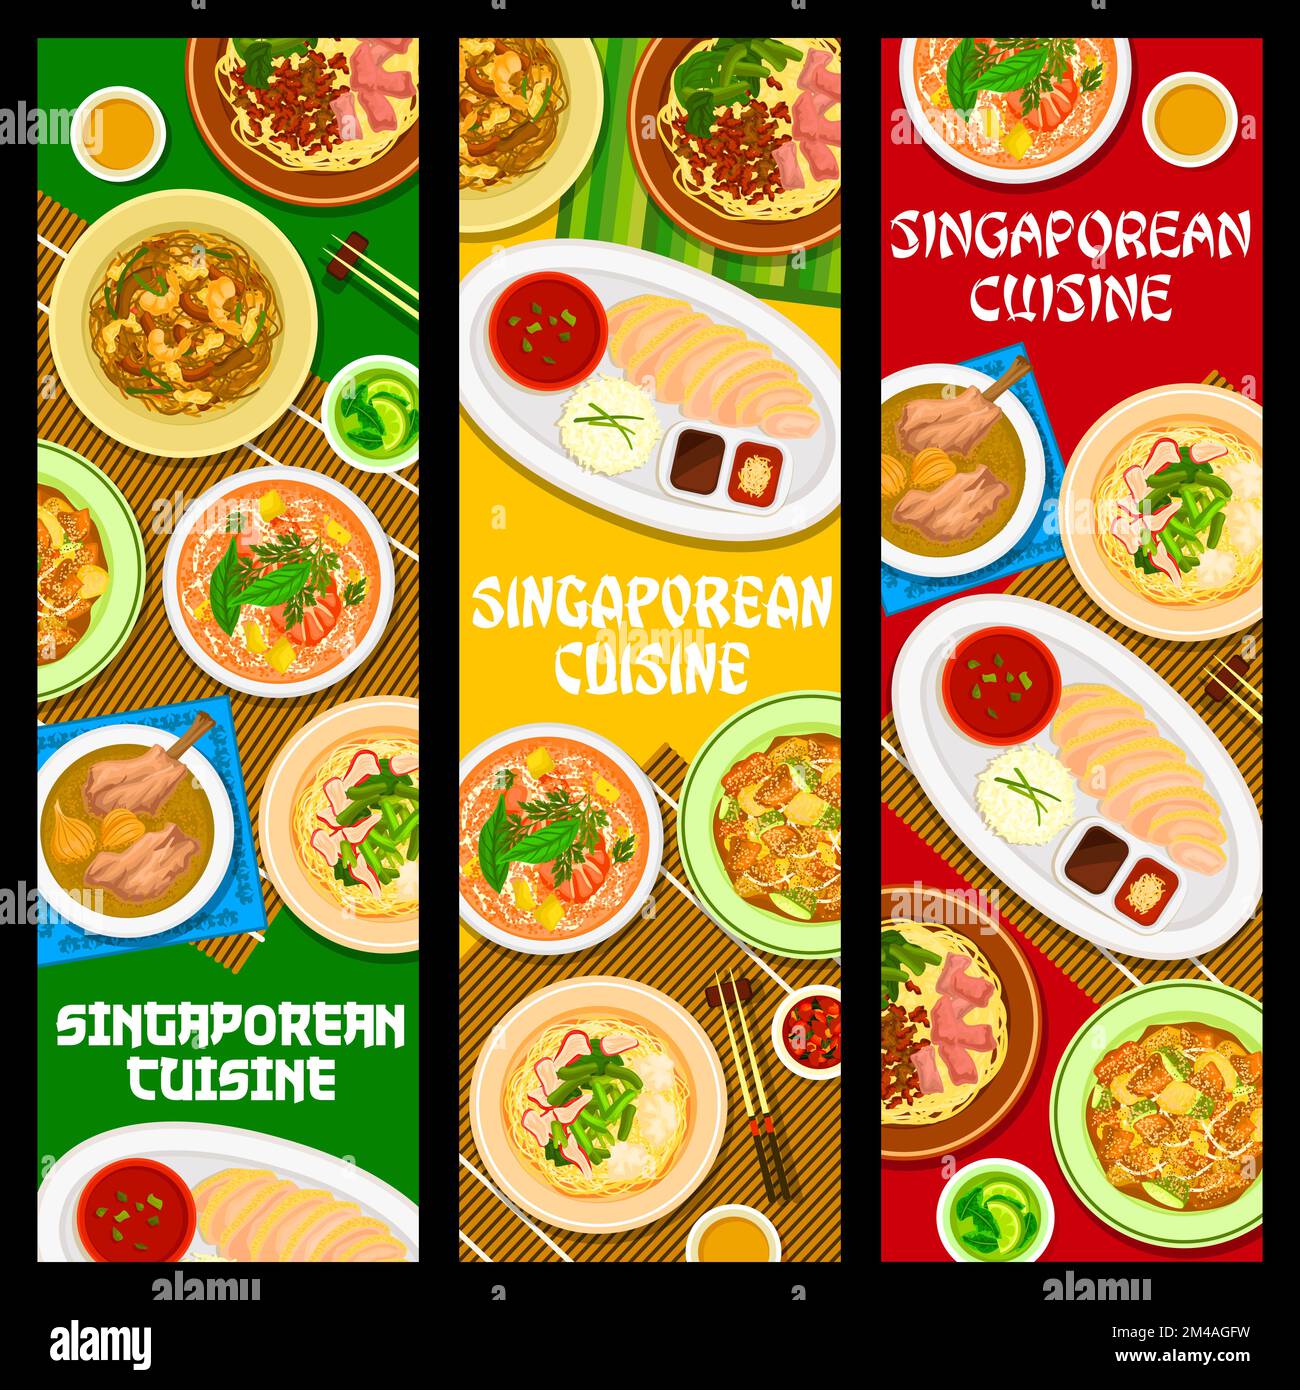 Banner, Gerichte und Mahlzeiten für die Küche Singapurs, traditionelles asiatisches Mittag- oder Abendessen. Singapur Küche authentischer Reis mit Hühnchen, Nudelsuppe mit Wontons und Schweinerippchen Fleisch mit Hühnchen Stock Vektor